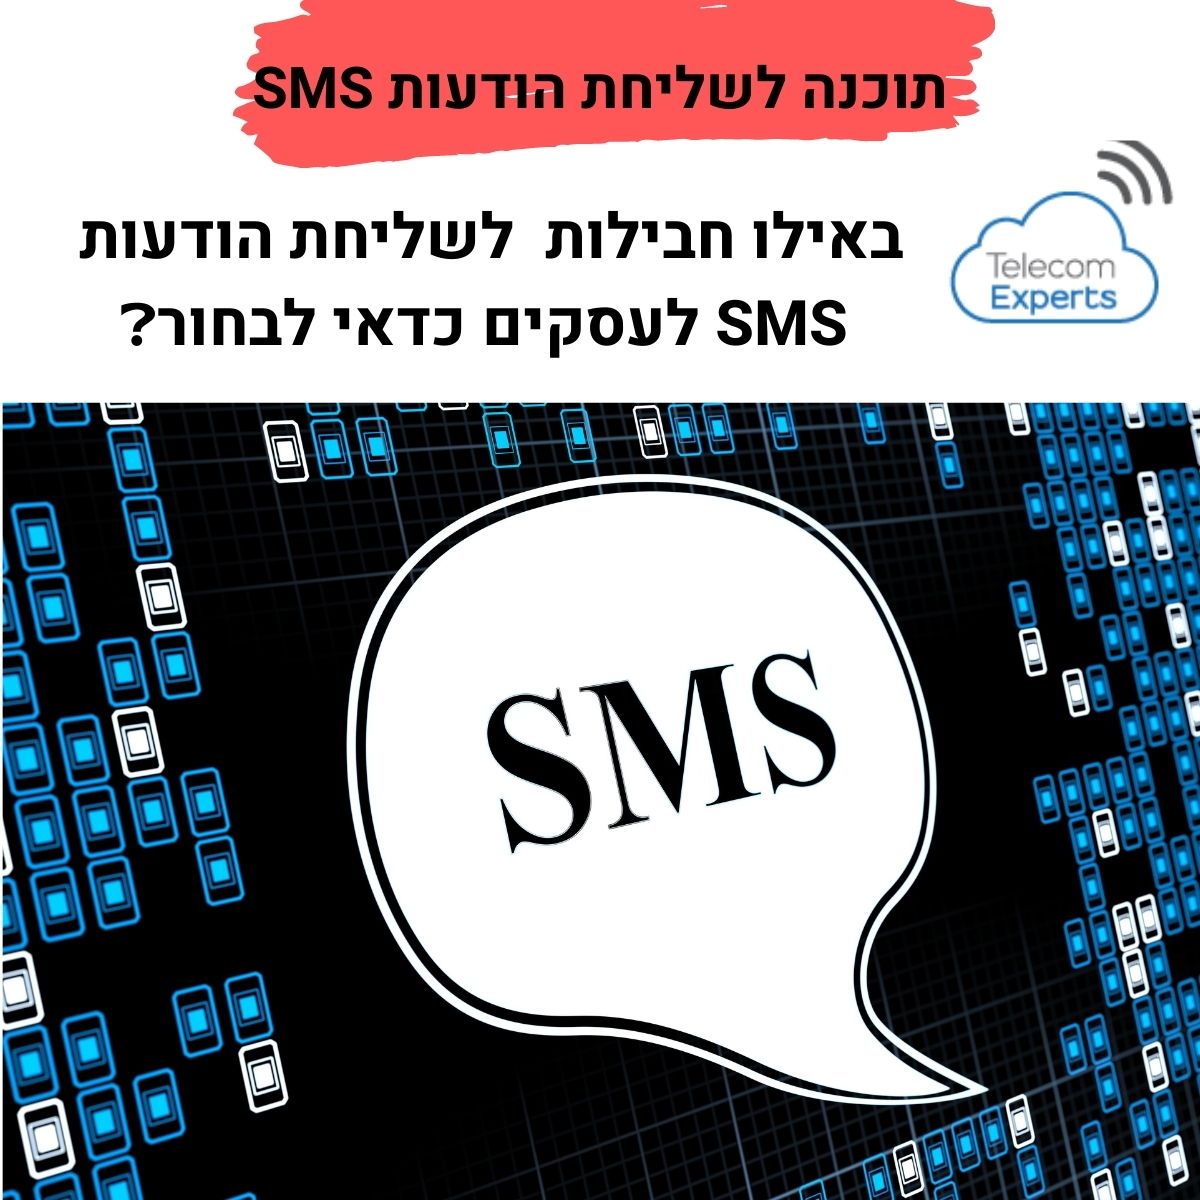 תוכנה לשליחת הודעות SMS